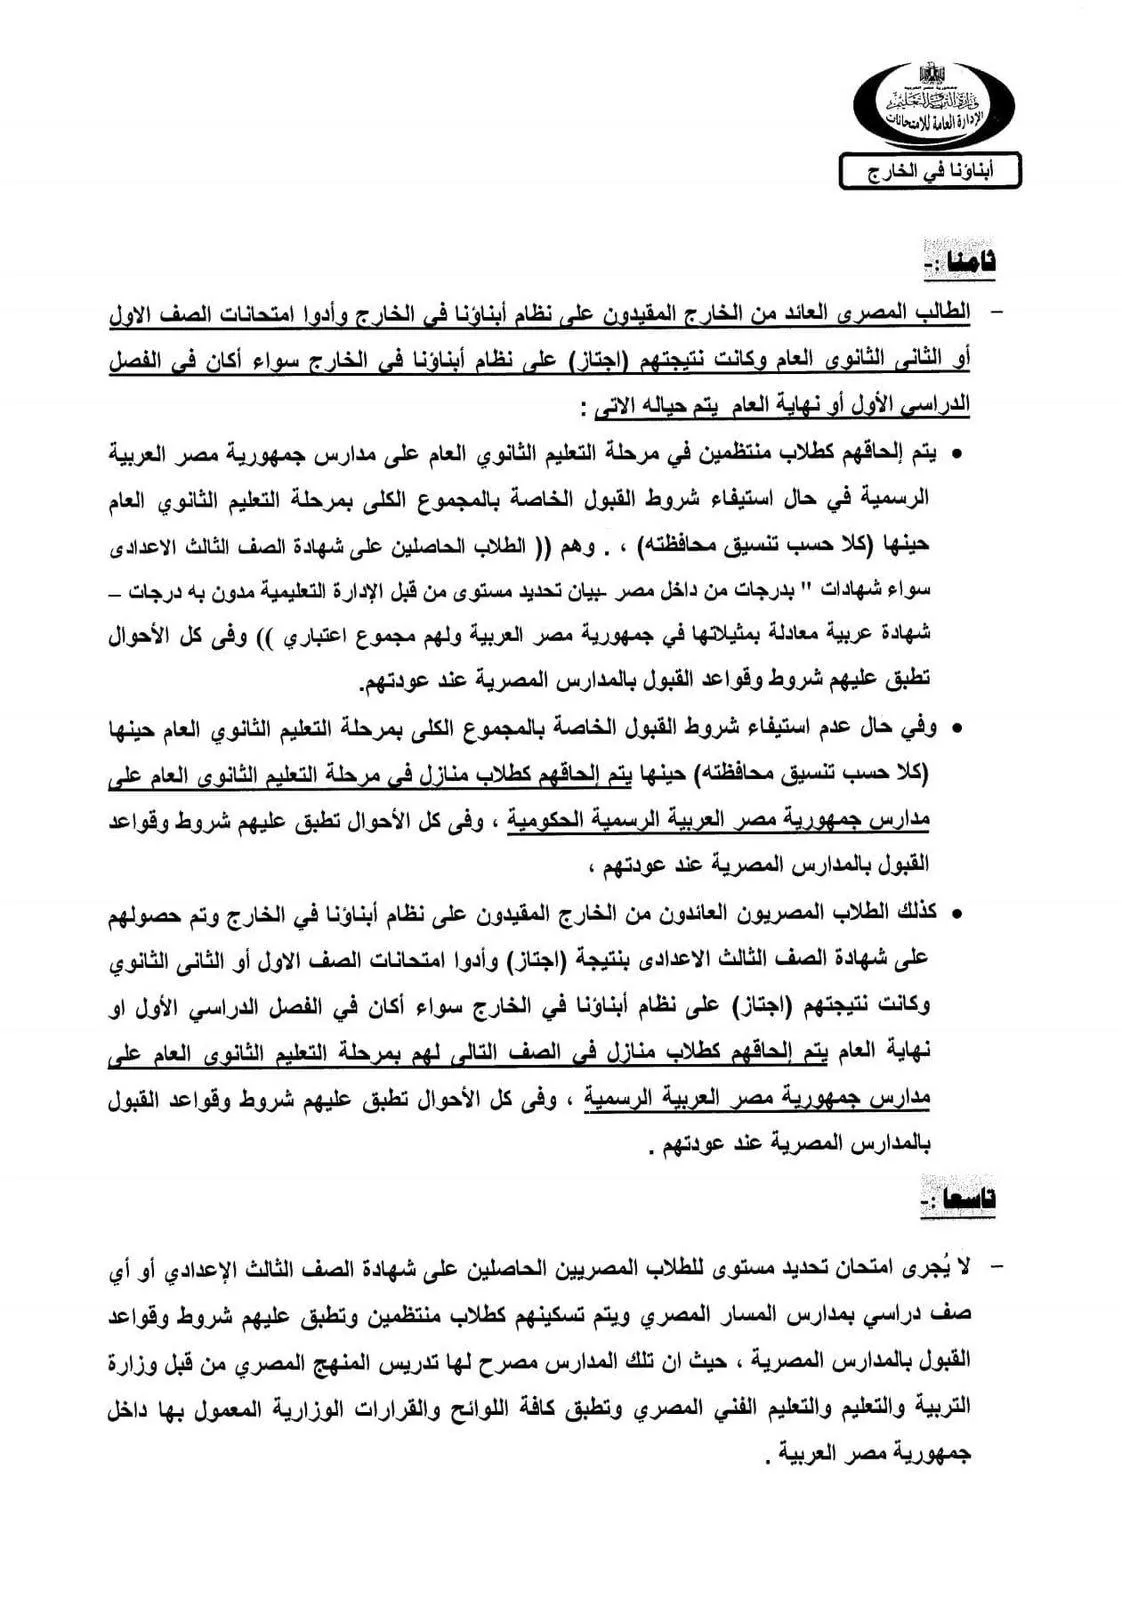 وزارة التعليم : تحدد ضوابط إلحاق الطلبة العائدين من الخارج بالمدارس المصرية " مستند "